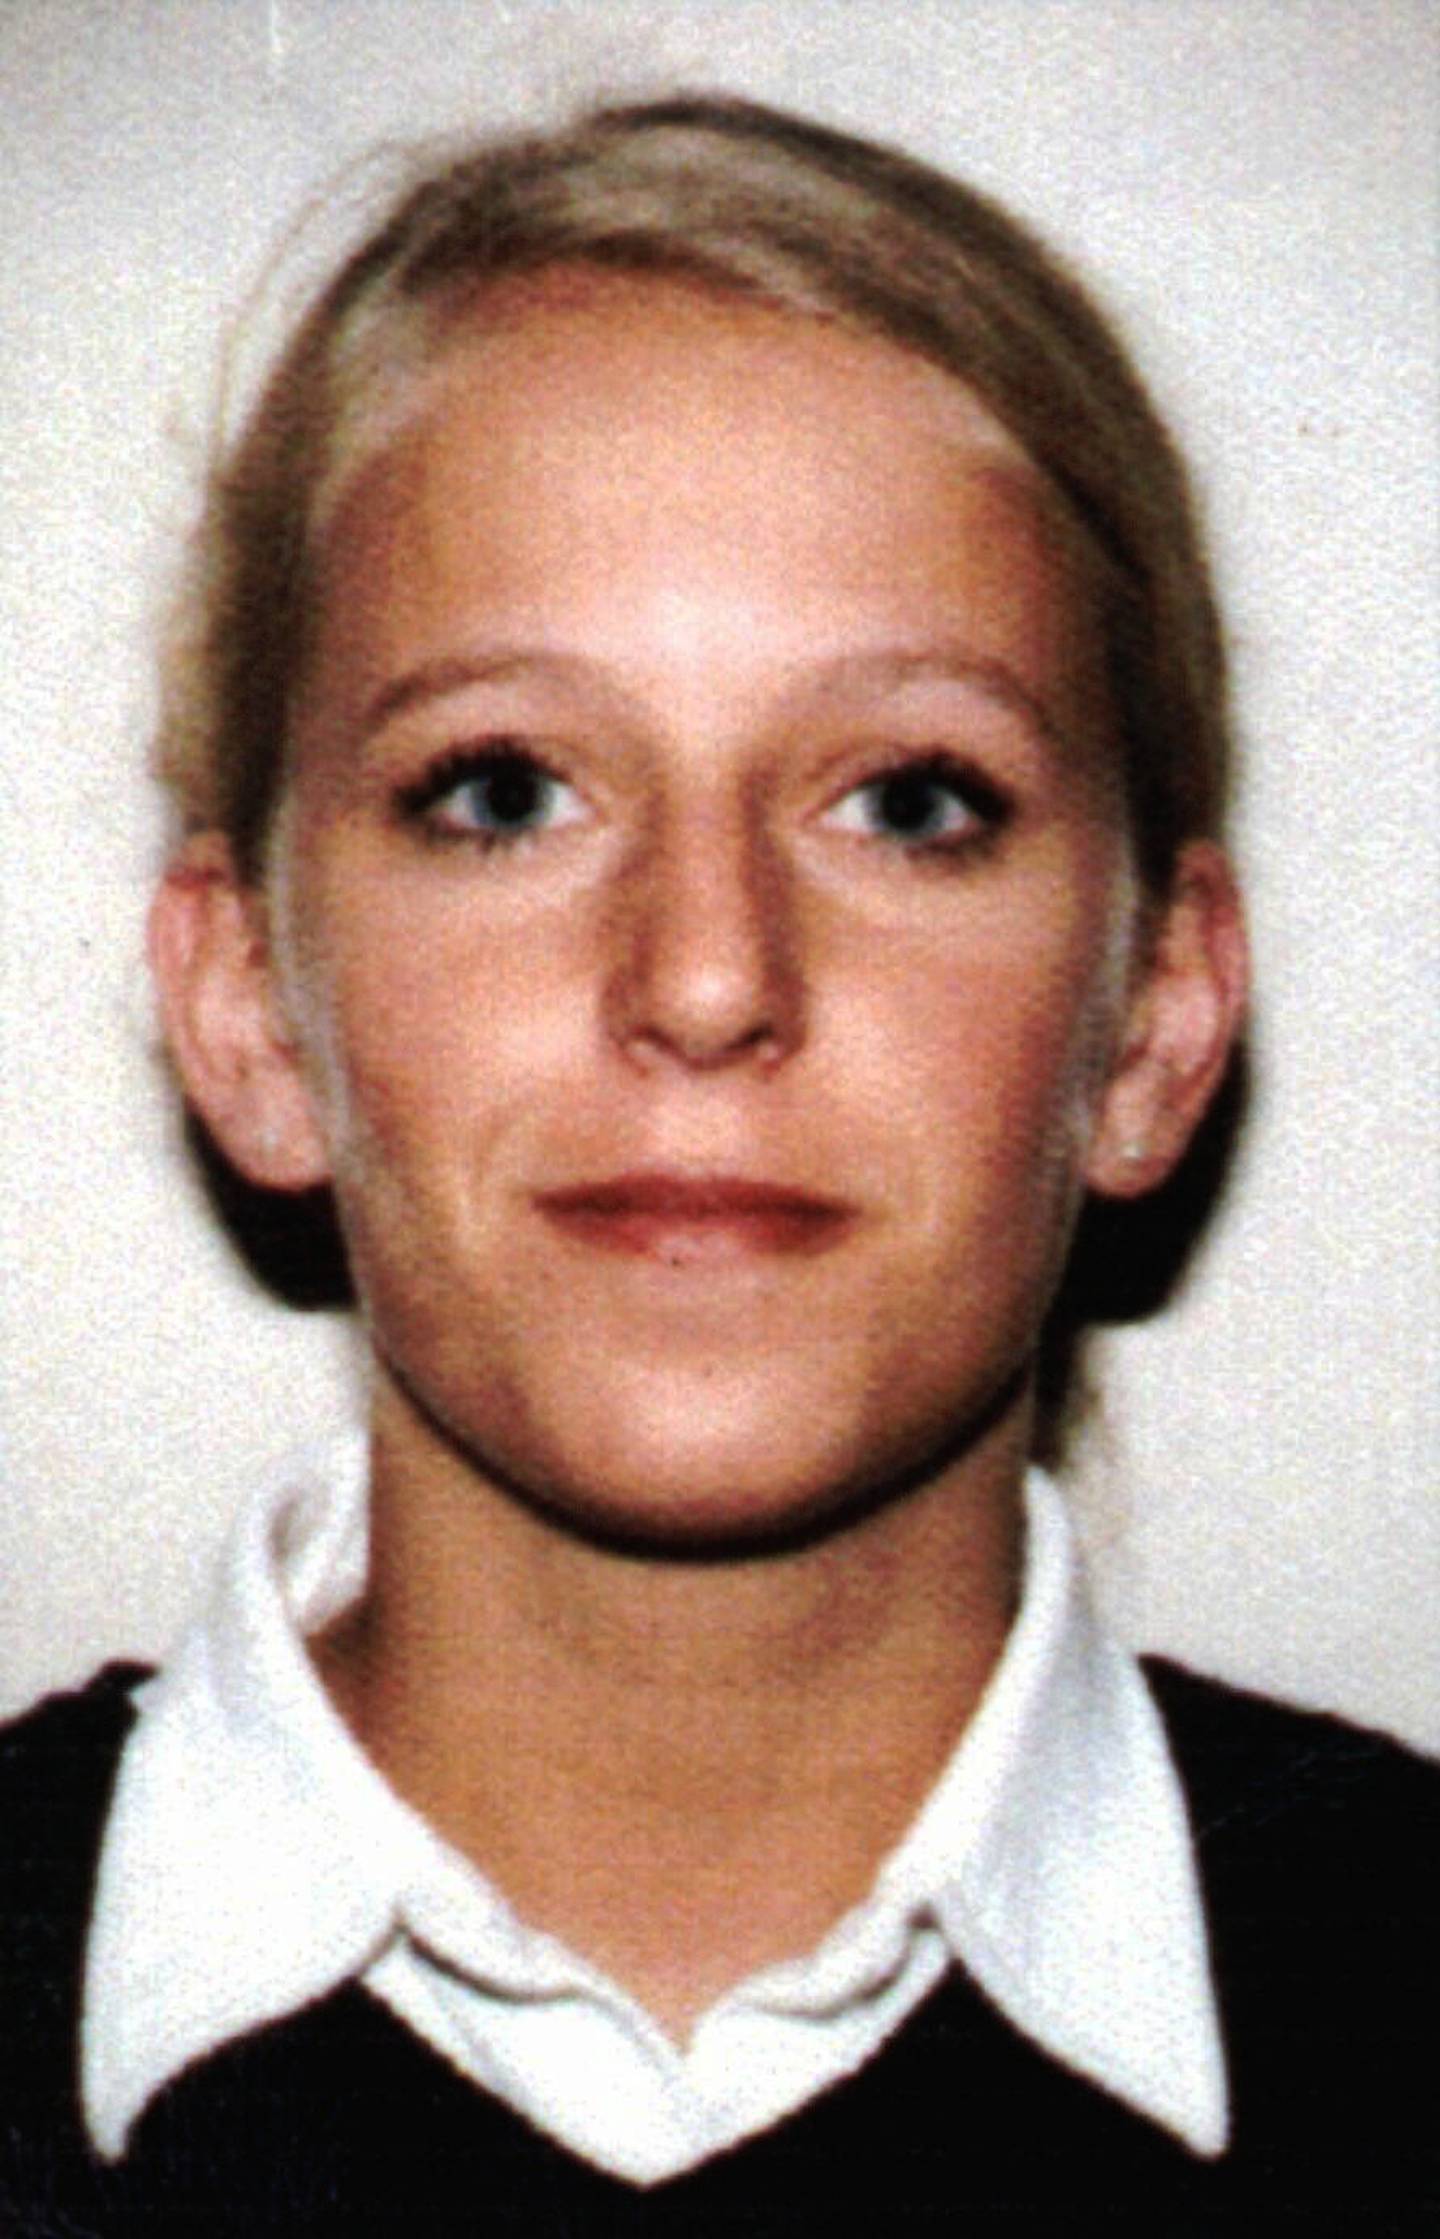 20 år gamle Tina Jørgensen ble funnet død i en dreneringskum ved Bore kirke på Jæren i 2000.